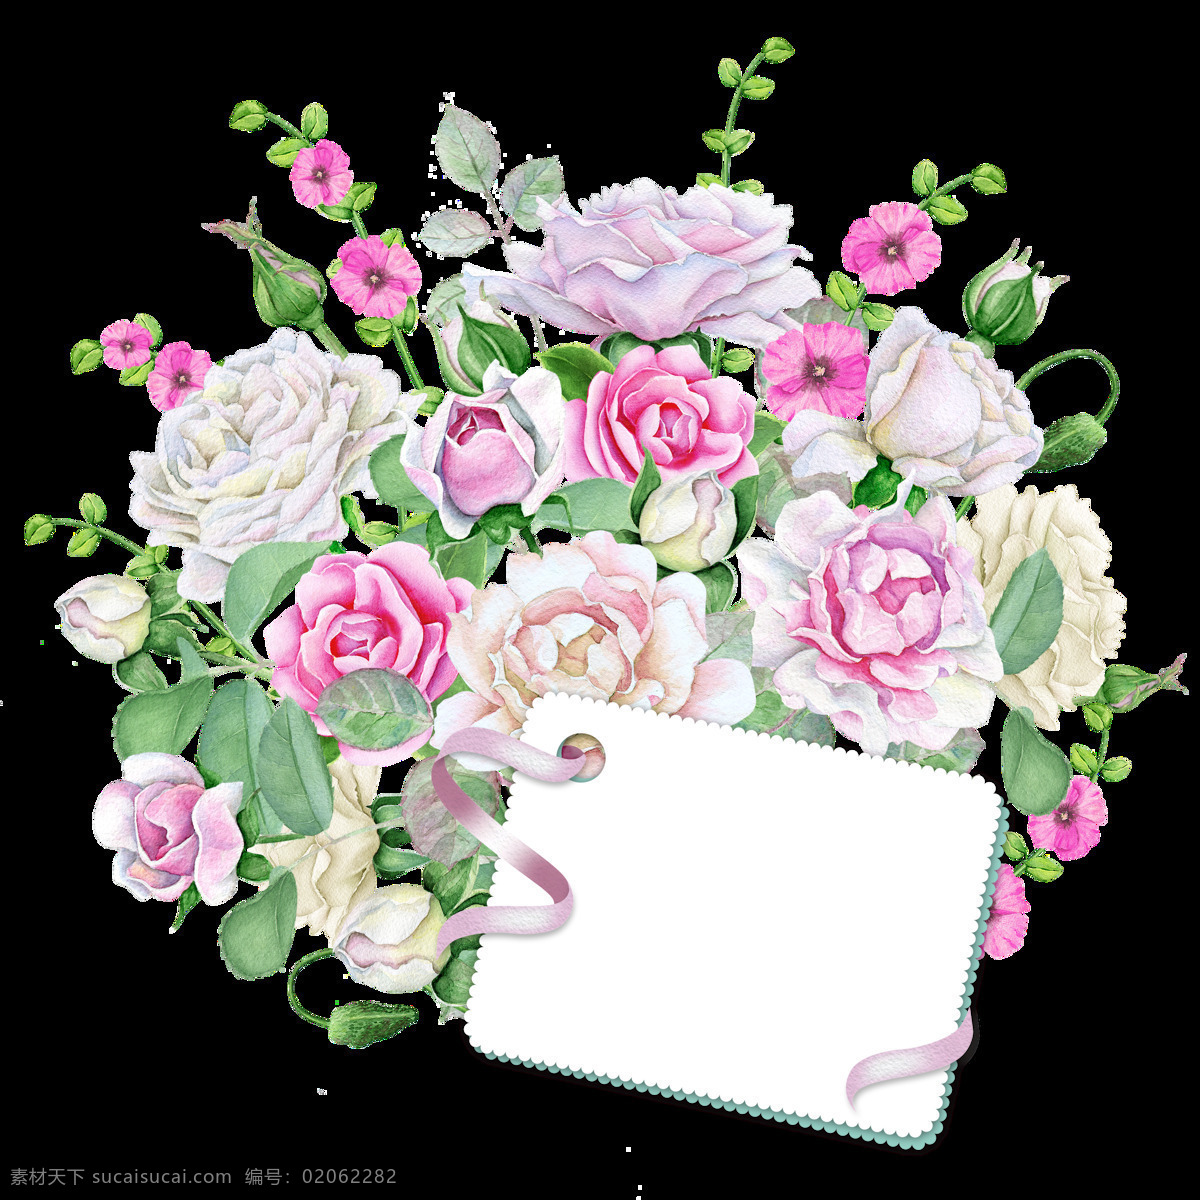 手绘 唯美 邀请 卡 背景 花朵 透明 透明素材 免扣素材 装饰图片 粉红色 验单 白色 玫瑰 茶花 绿色